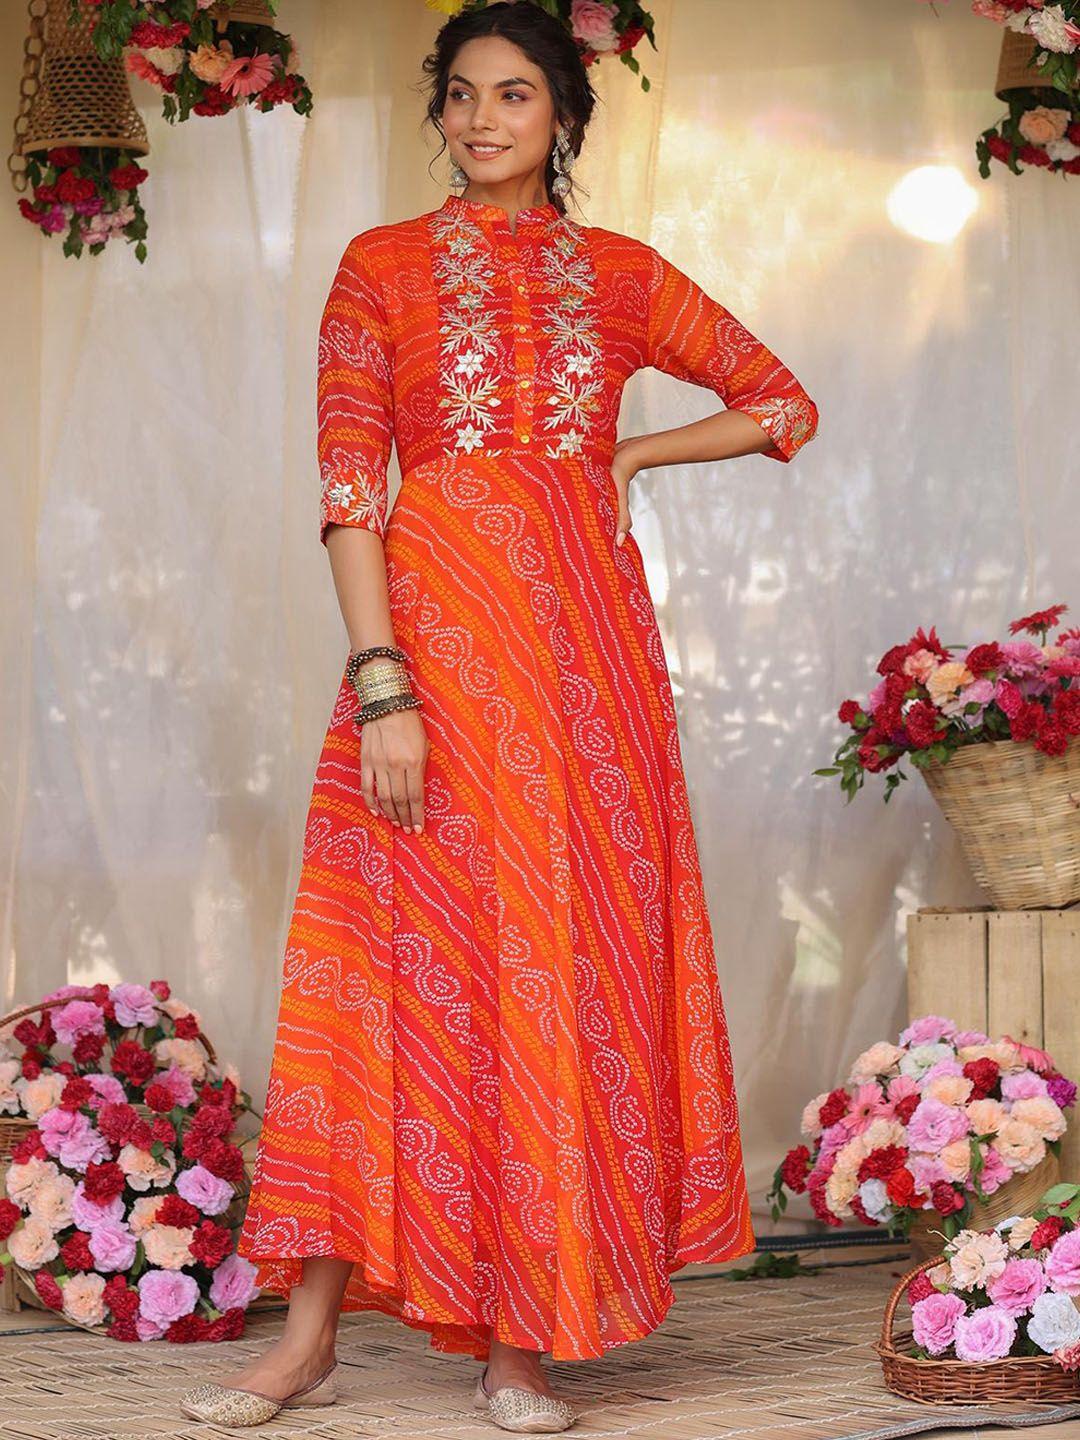 scakhi women orange & gold bandhani printed ethnic a-line dress